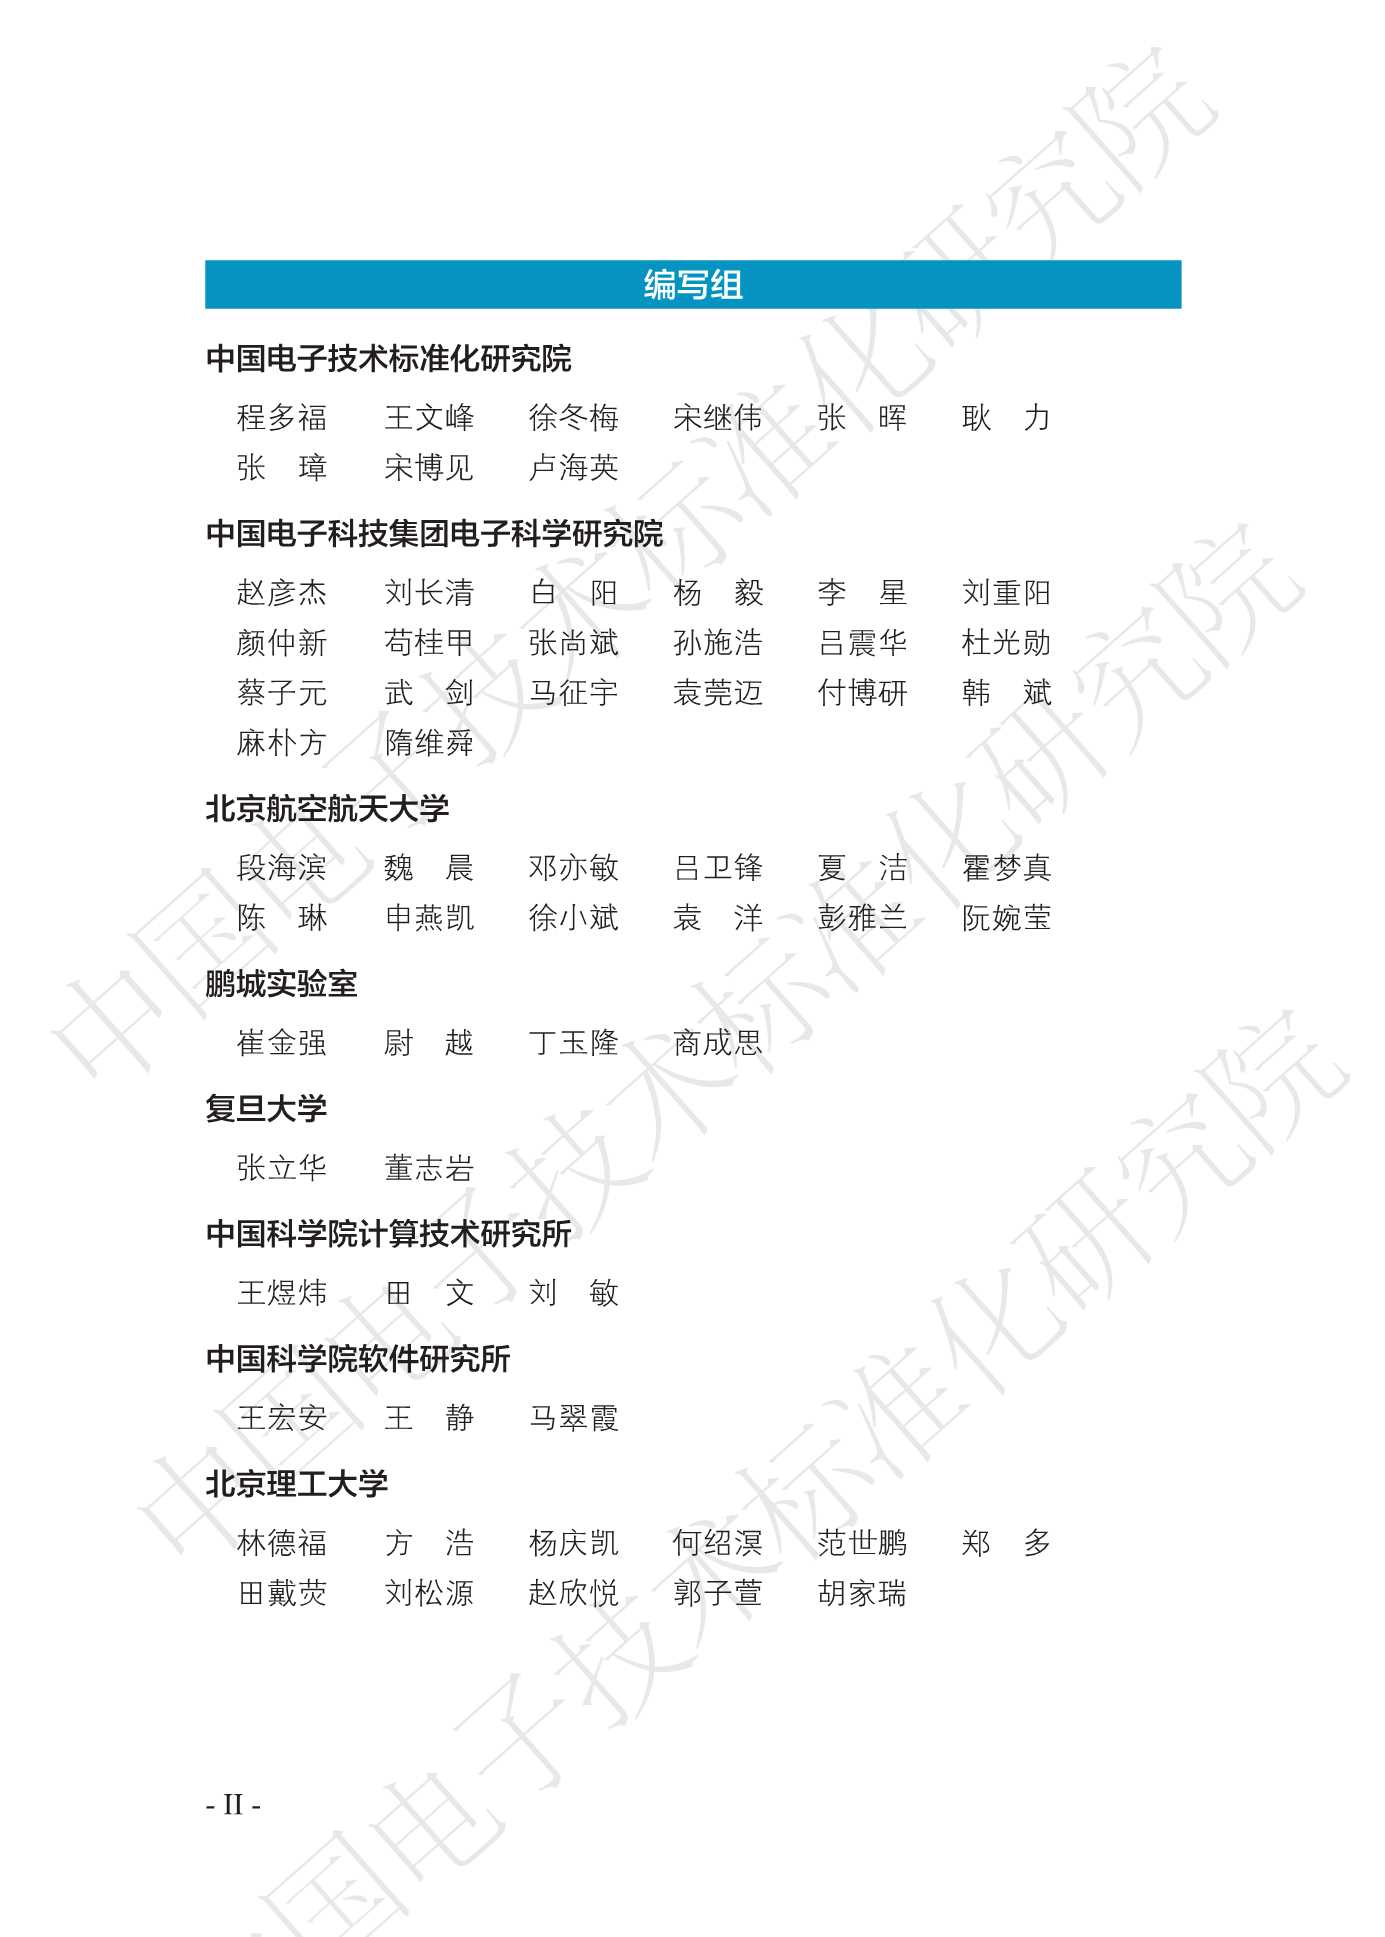 中国电子技术标准化研究院-智能无人集群系统发展白皮书-2021.12-77页